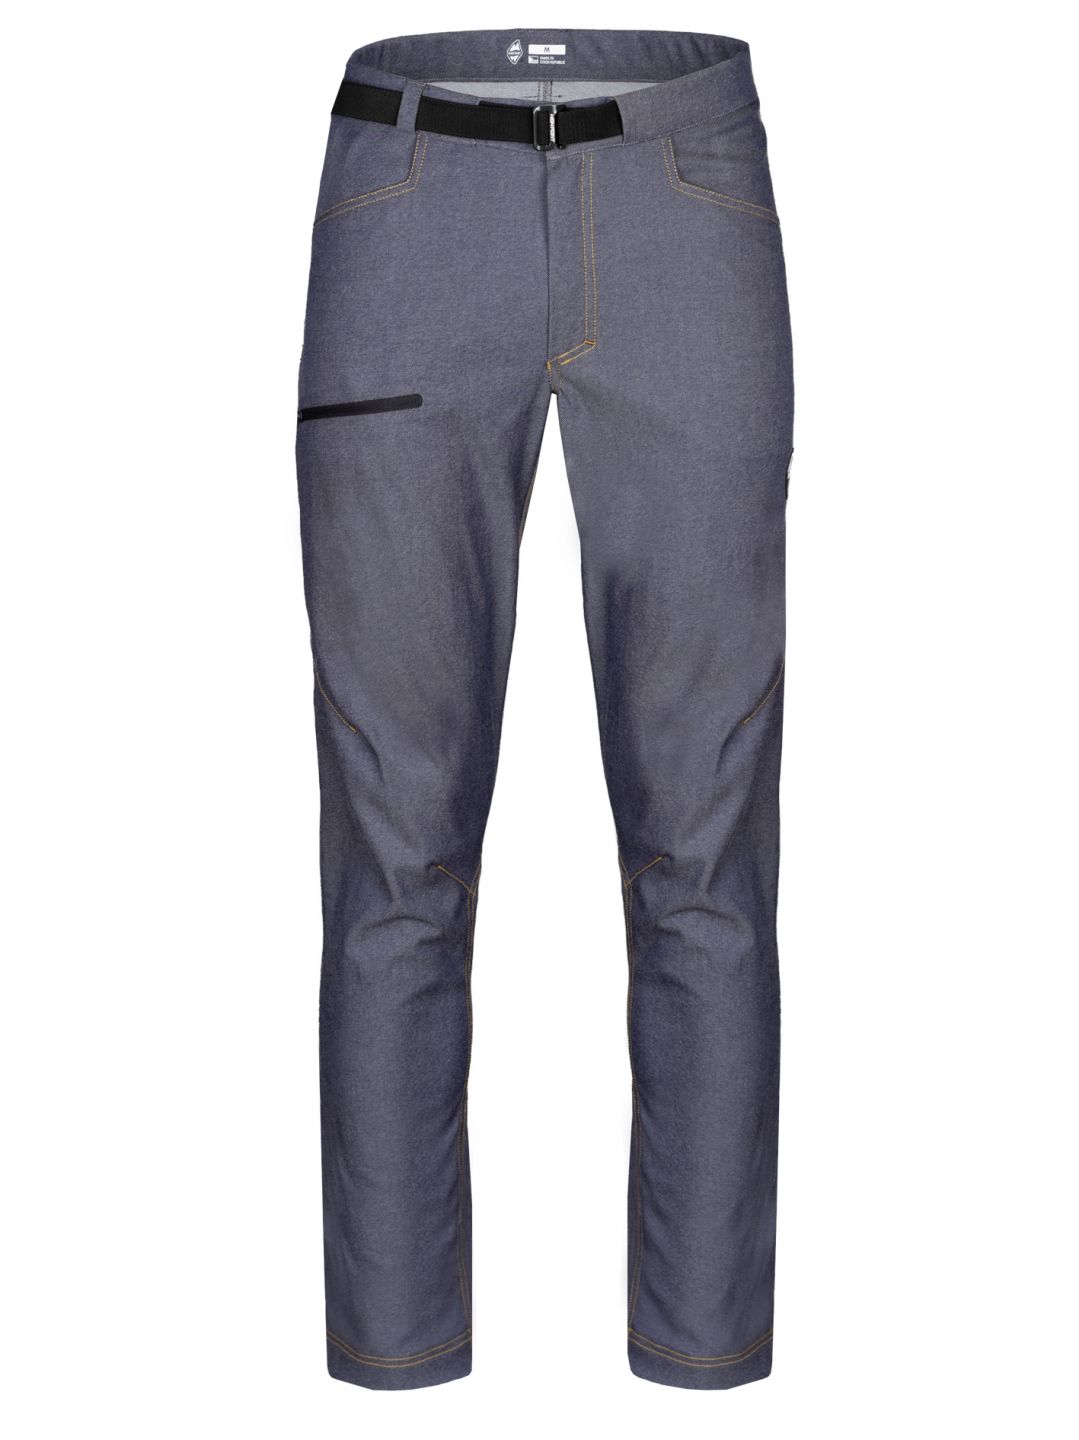 HIGH POINT GRAVITY Pants Denim Blue varianta: XL